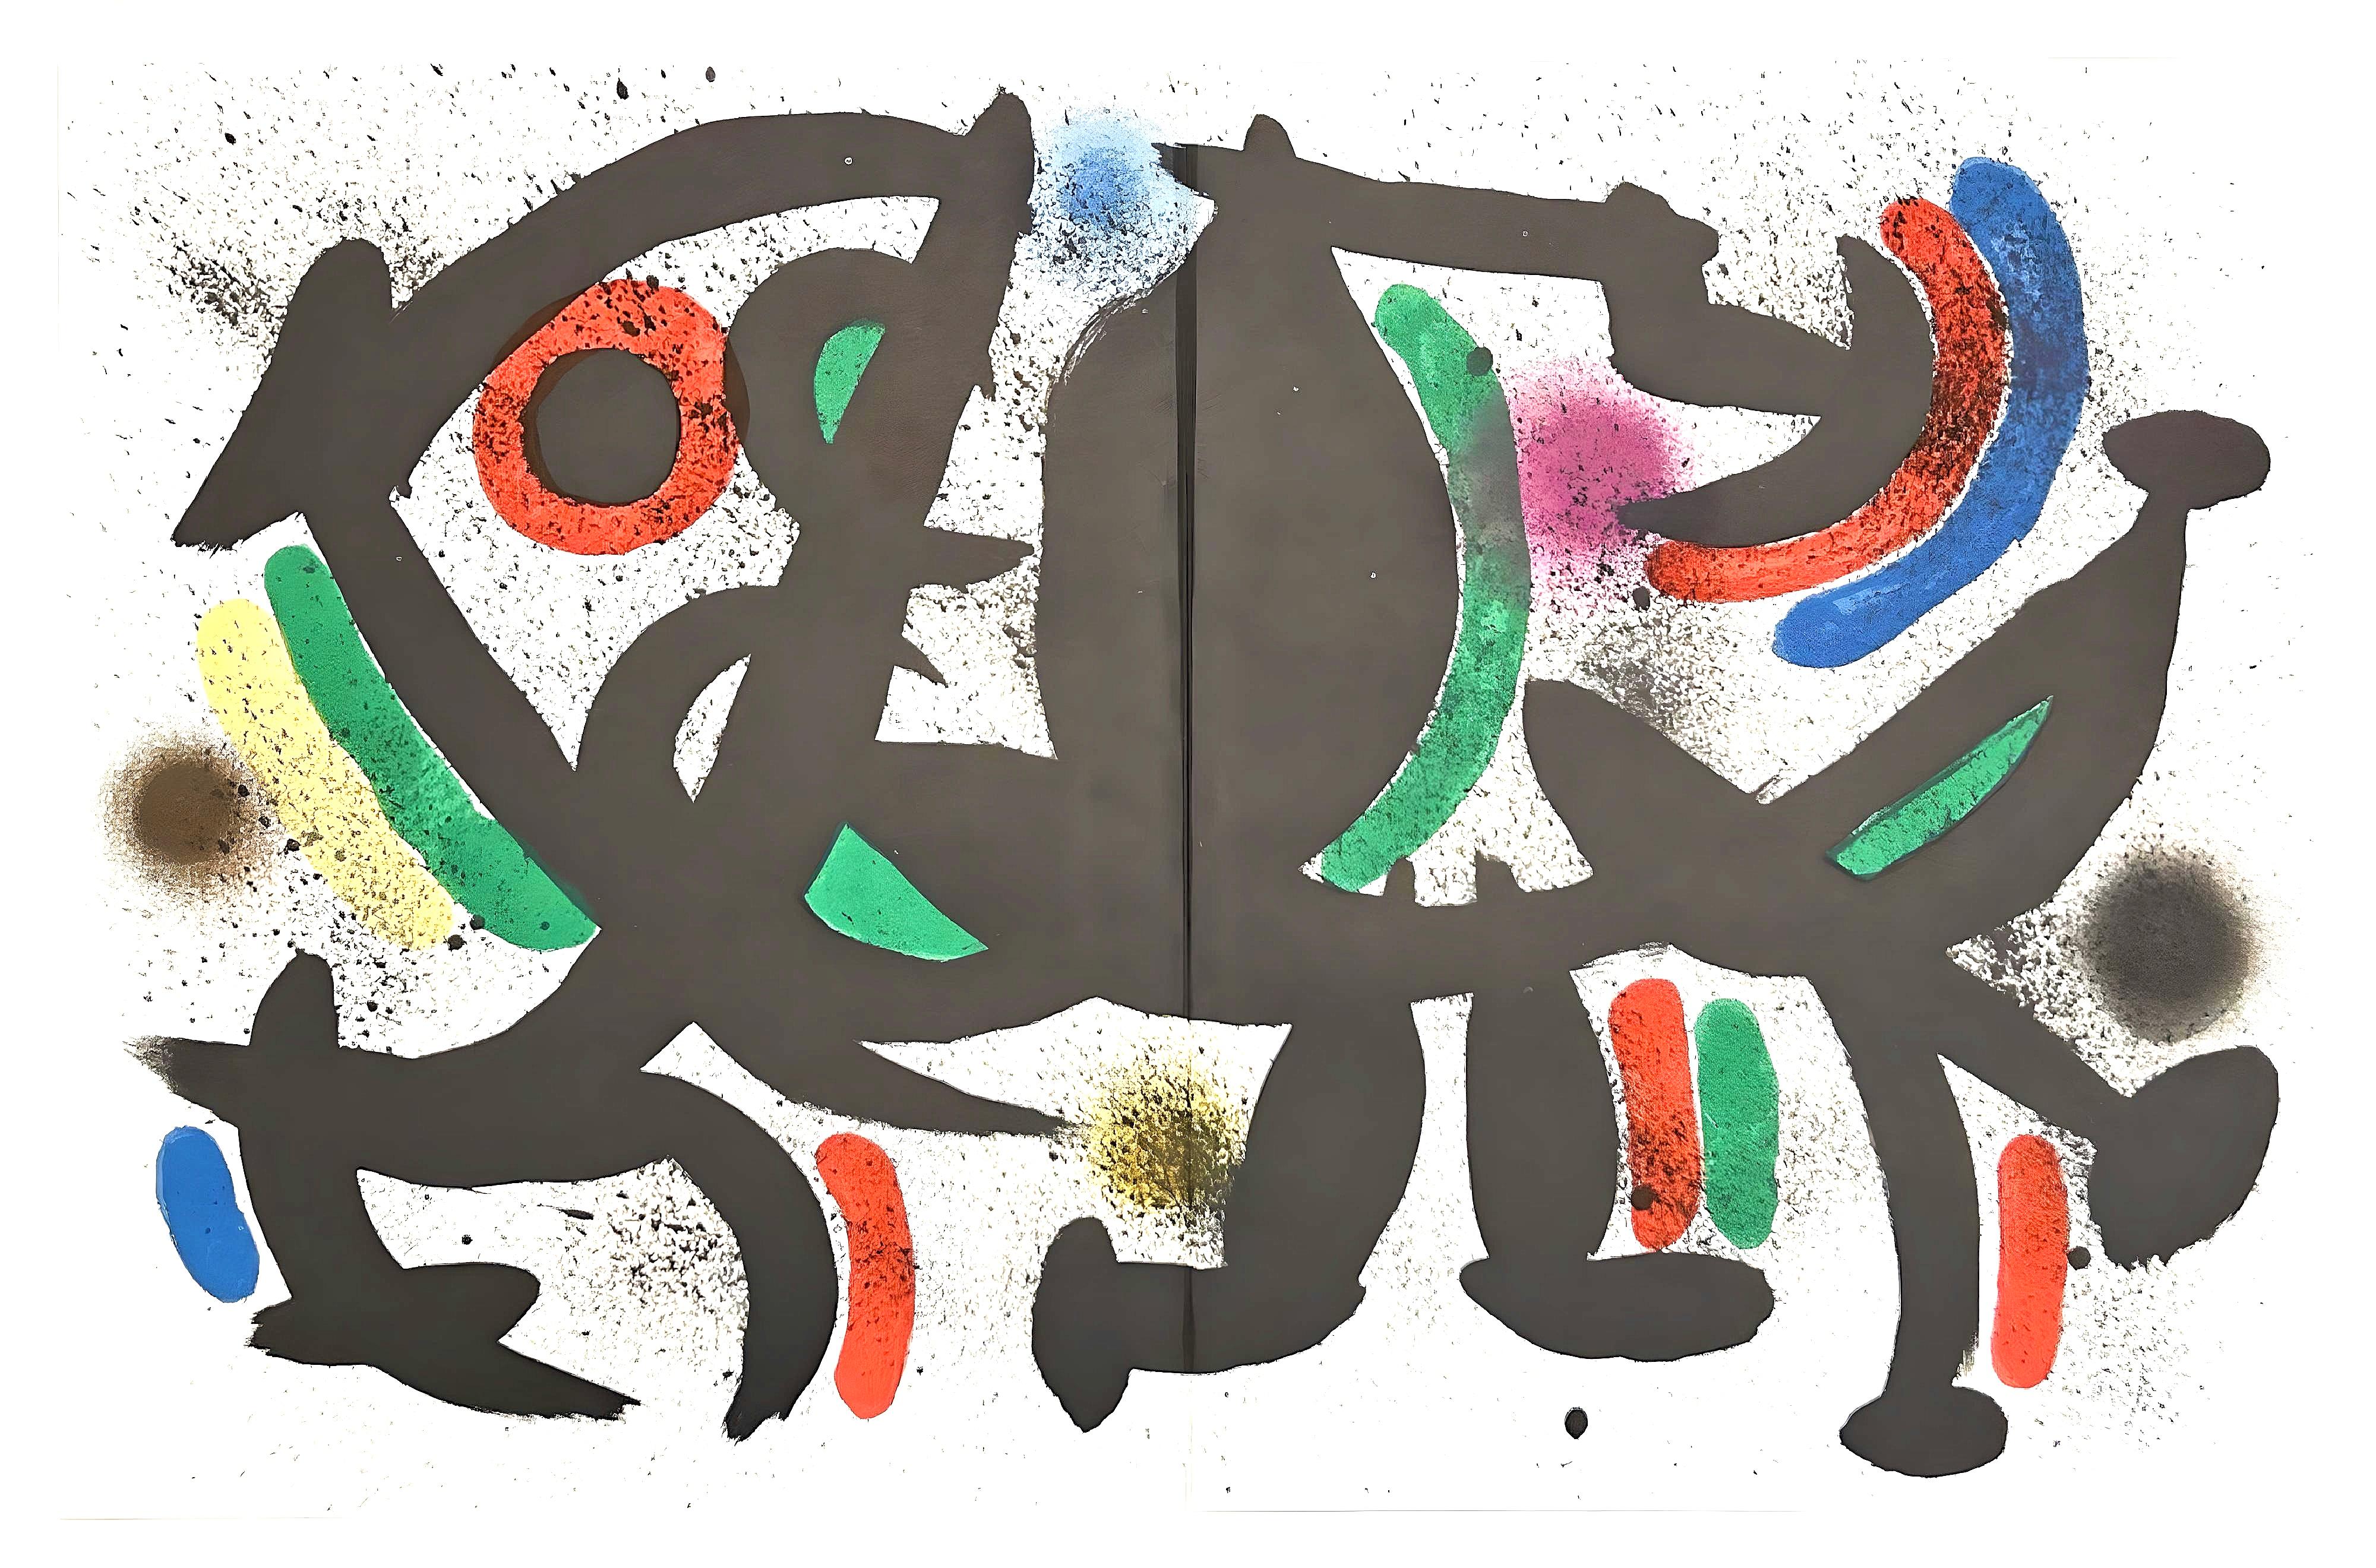 Miró, Litógrafia original VII (Cramer 160; Mourlot 864), Litógrafo I (after) - Surrealist Print by Joan Miró